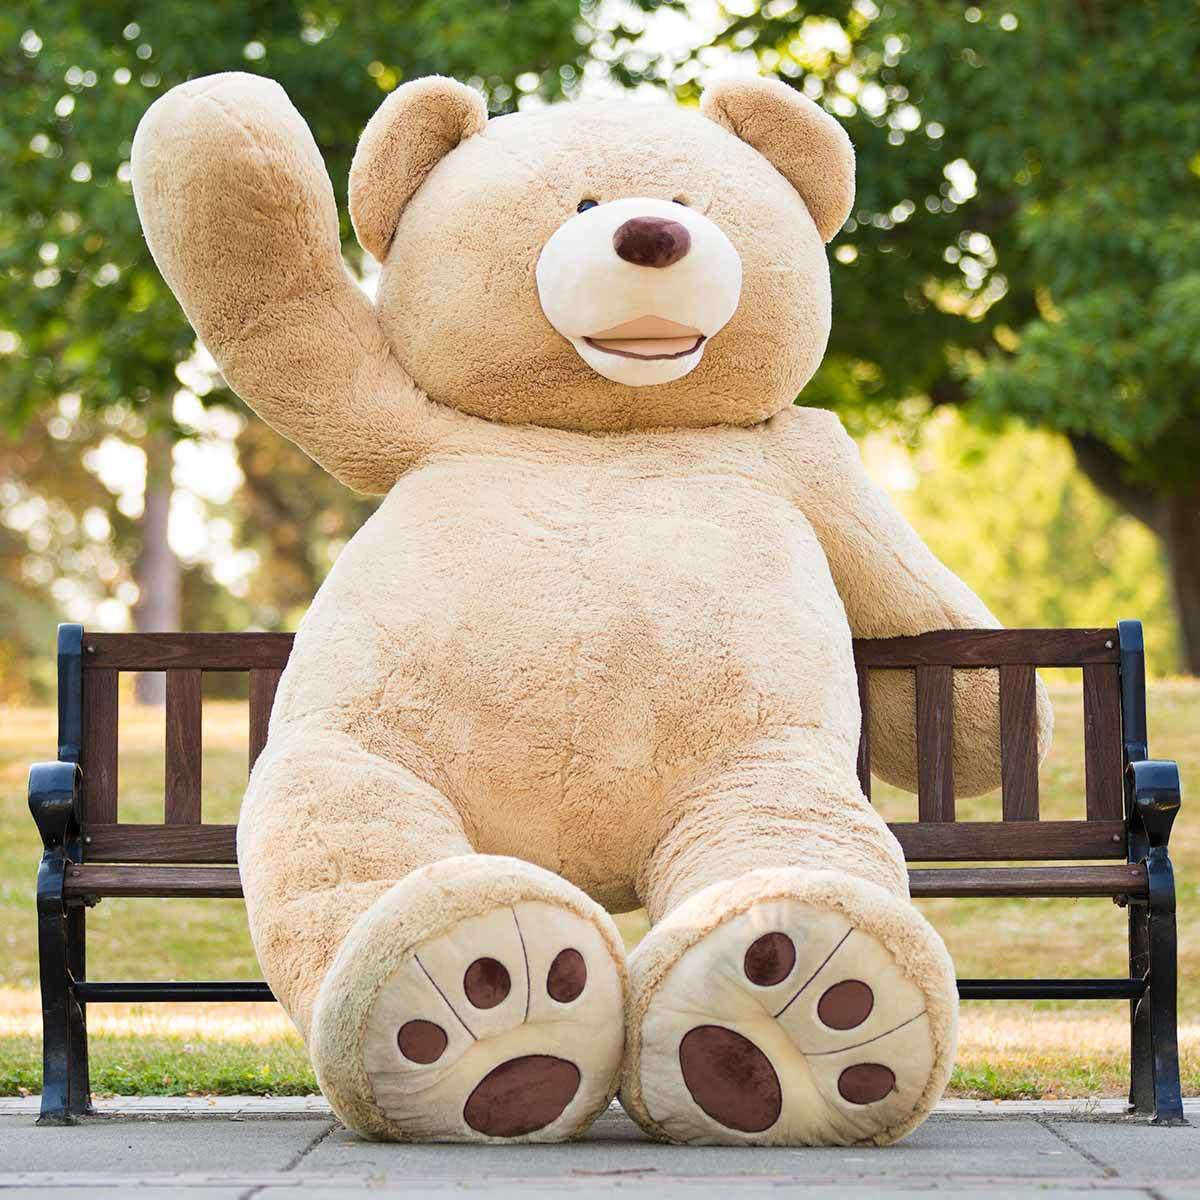 huge teddy bear price